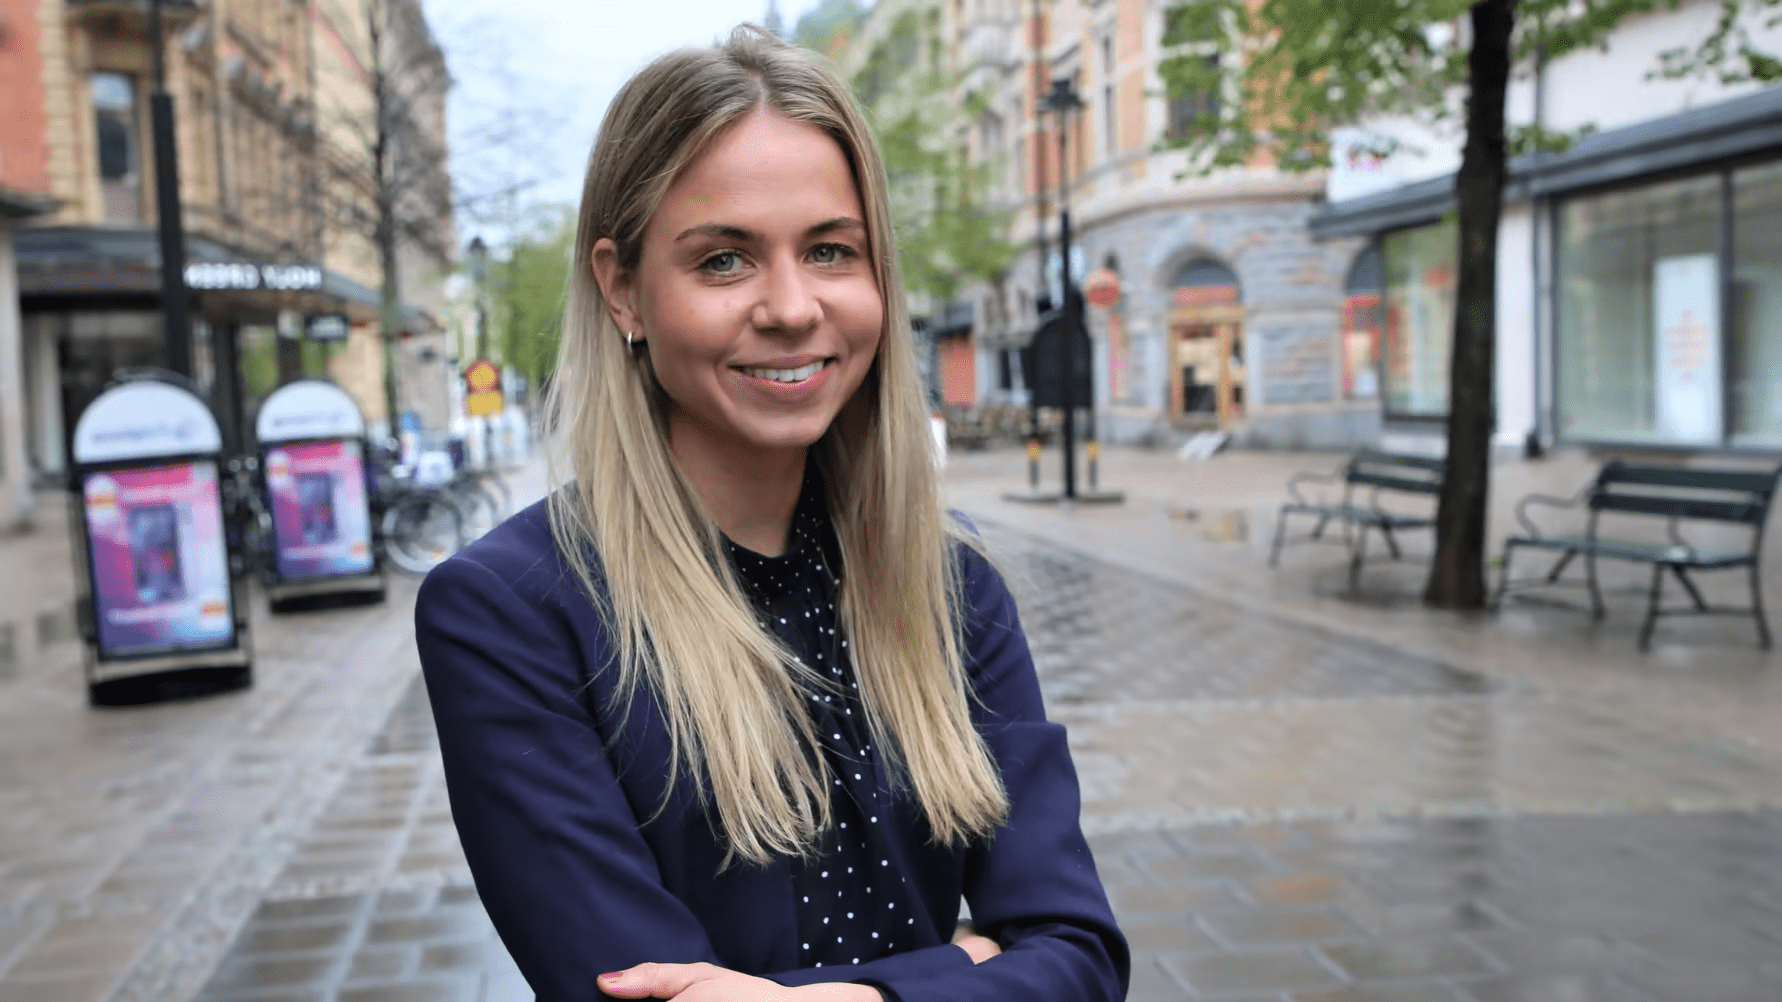 Karolina utmanade sin affärsidé – nu erbjuder hennes företag HR-tjänster